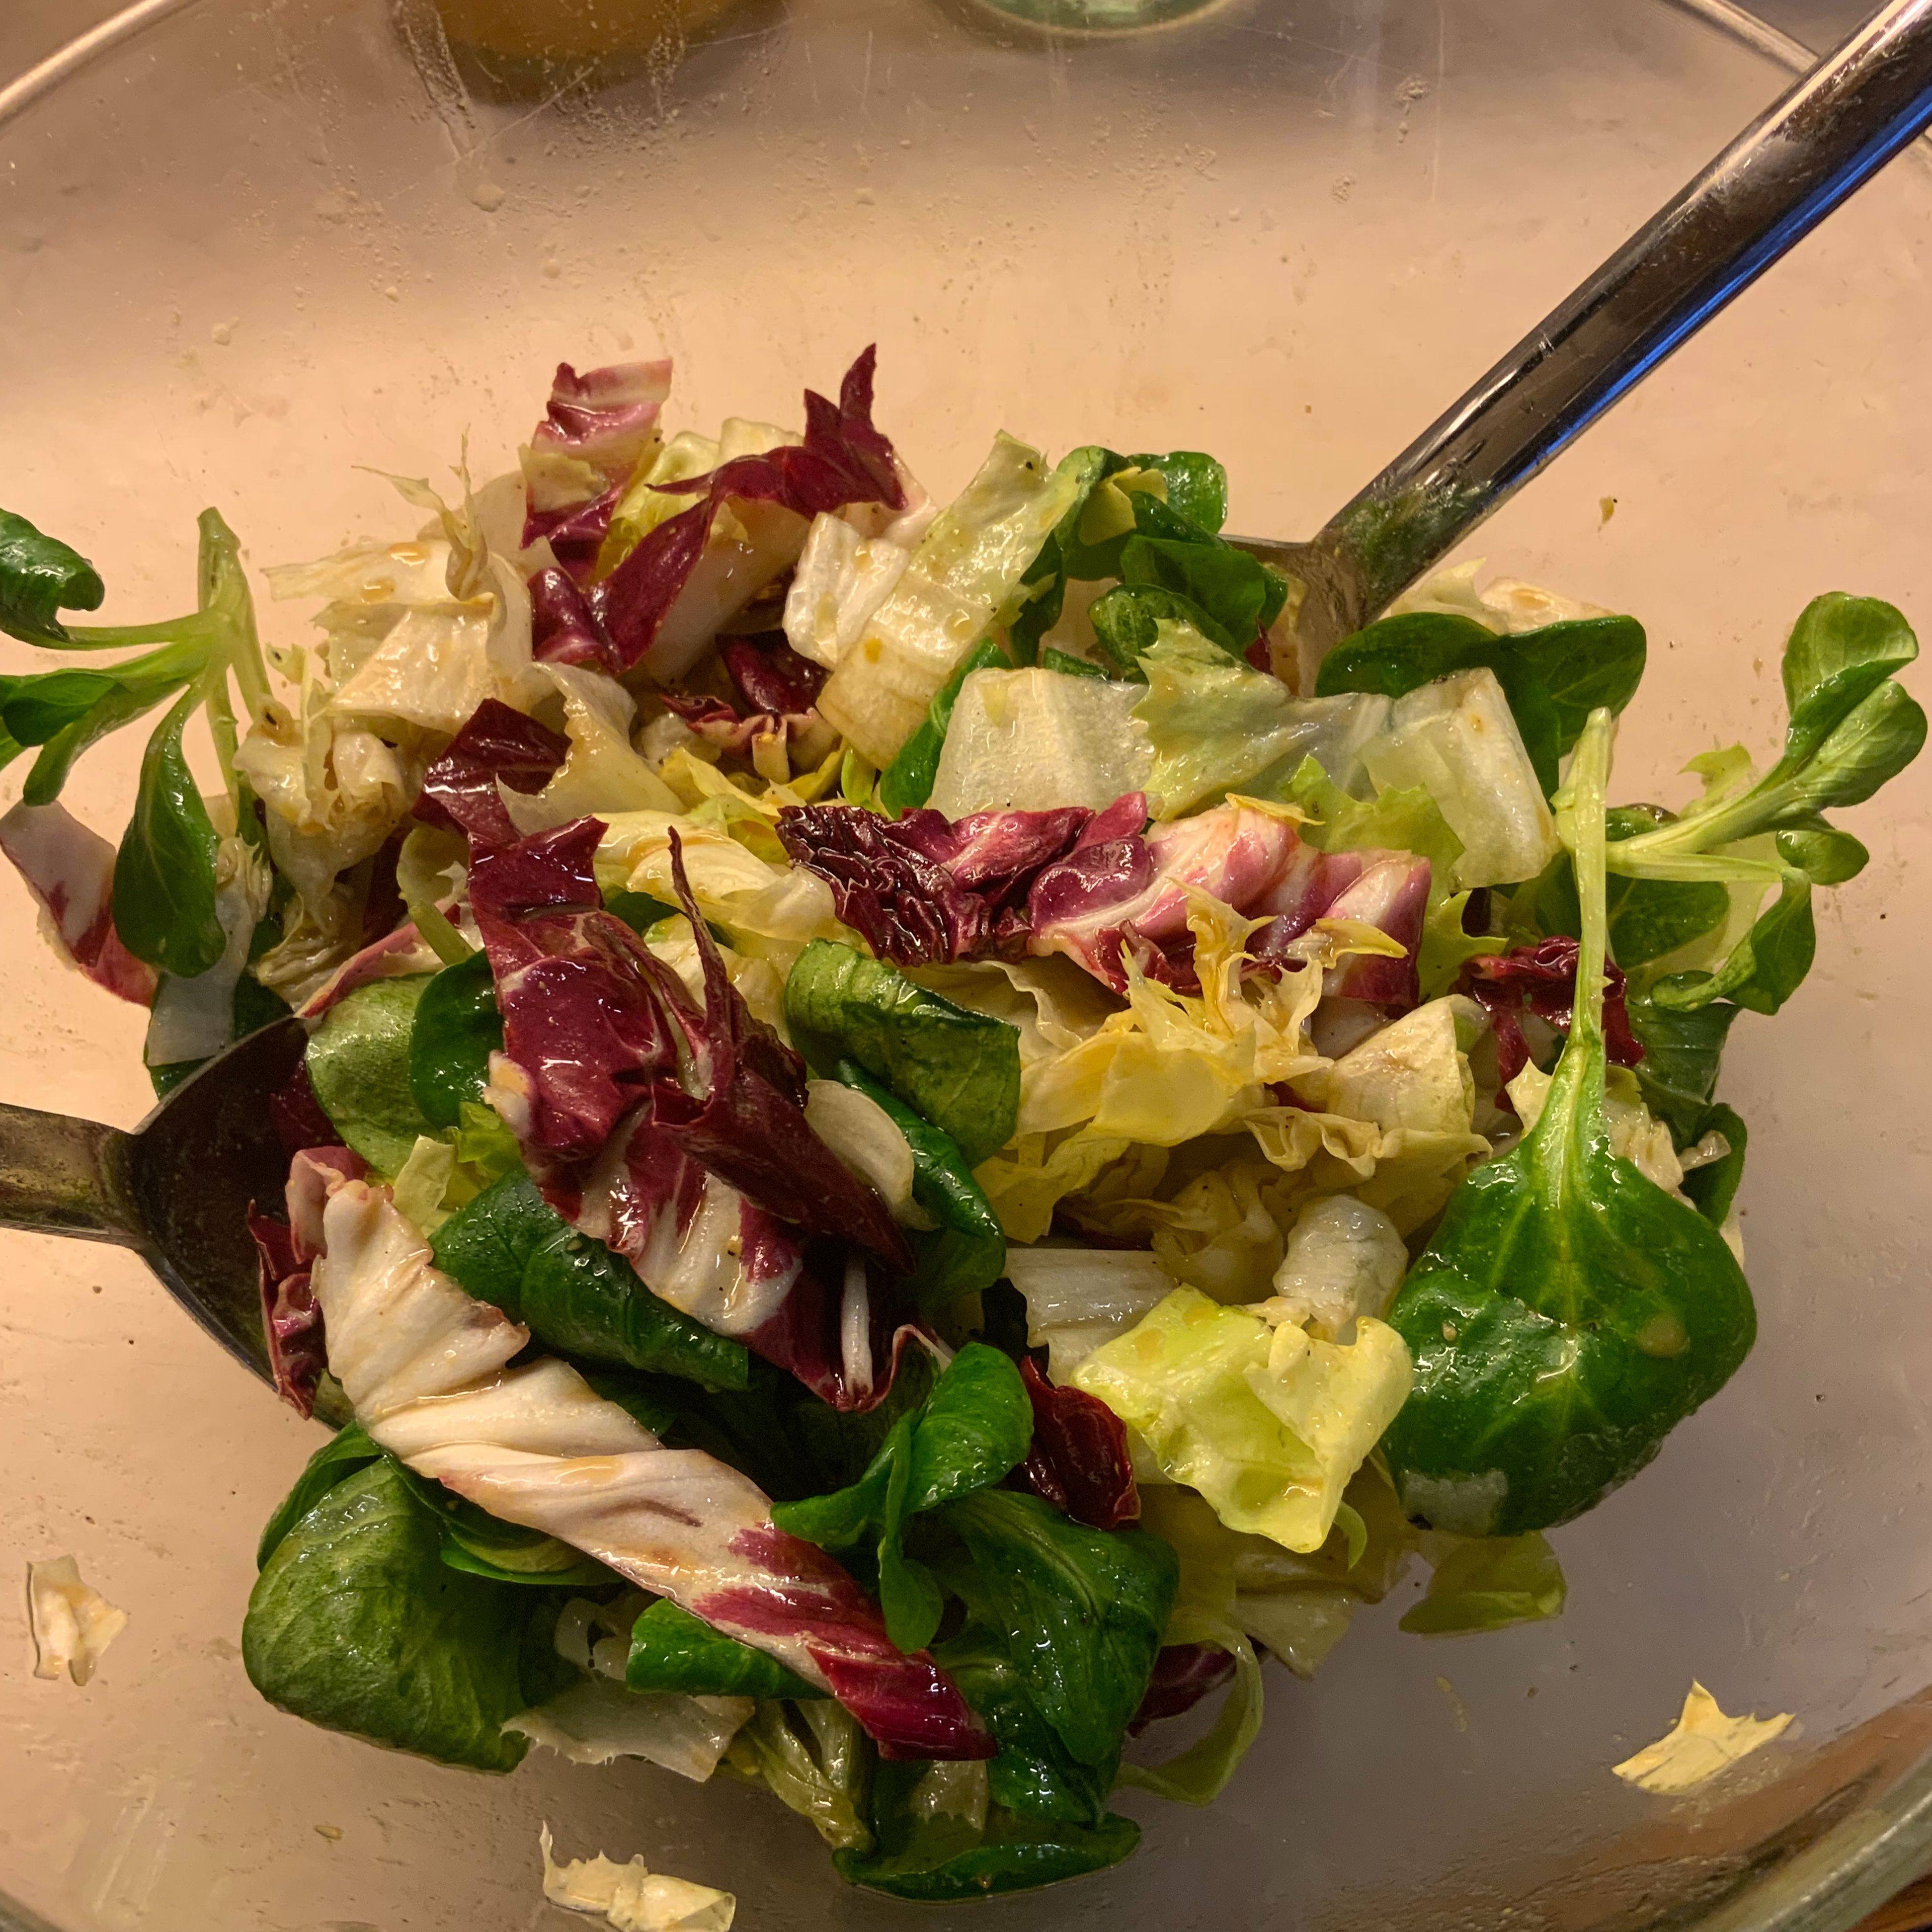 Ebenso flott mach ich es mit dem Salat. Den Endivien und Raddicio, die ich als Wintersalat in dieser Kombination liebe, in feine Streifen schneiden, leicht salzen und pfeffern und mit einer leichten Essig/Ölvinaigrette übergießen. Den Salat gut durchheben - fertig !